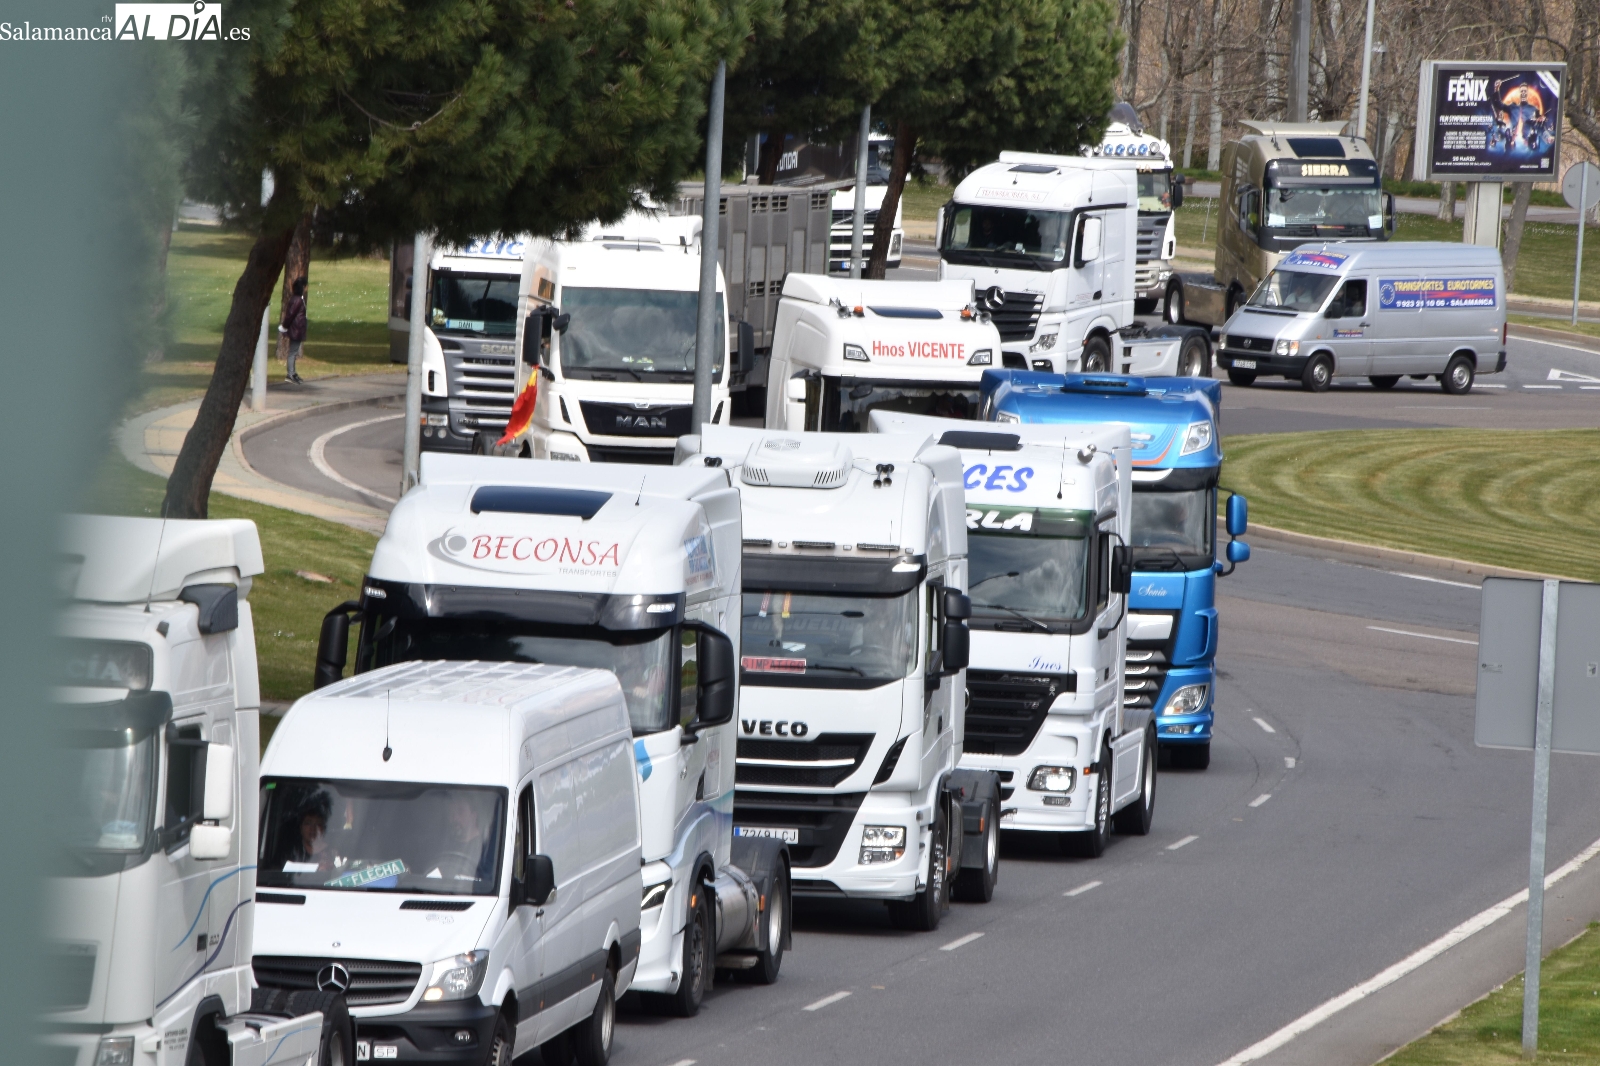 Cerca de 140 camiones recorren la ciudad para protestar por la ciudad de Salamanca